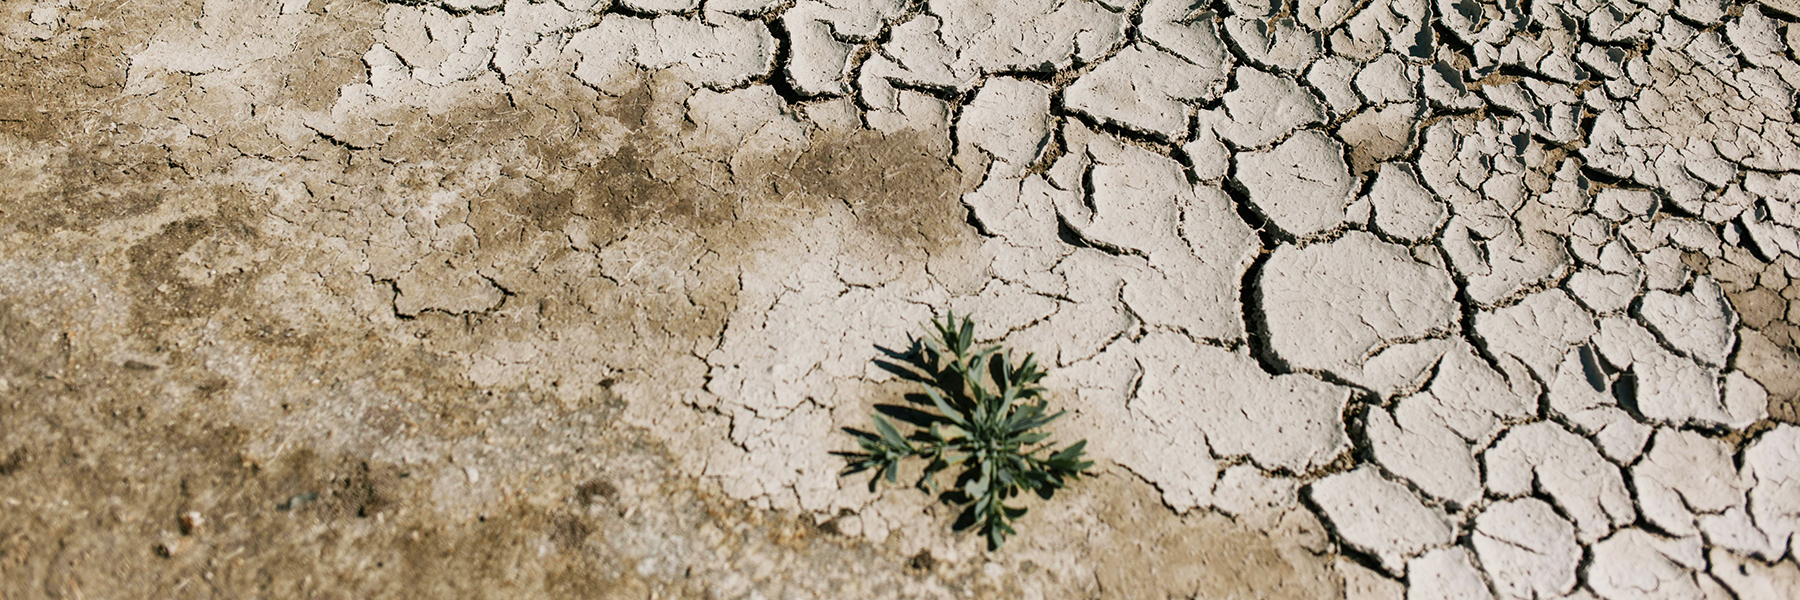 climate crisis dry desert BANNER